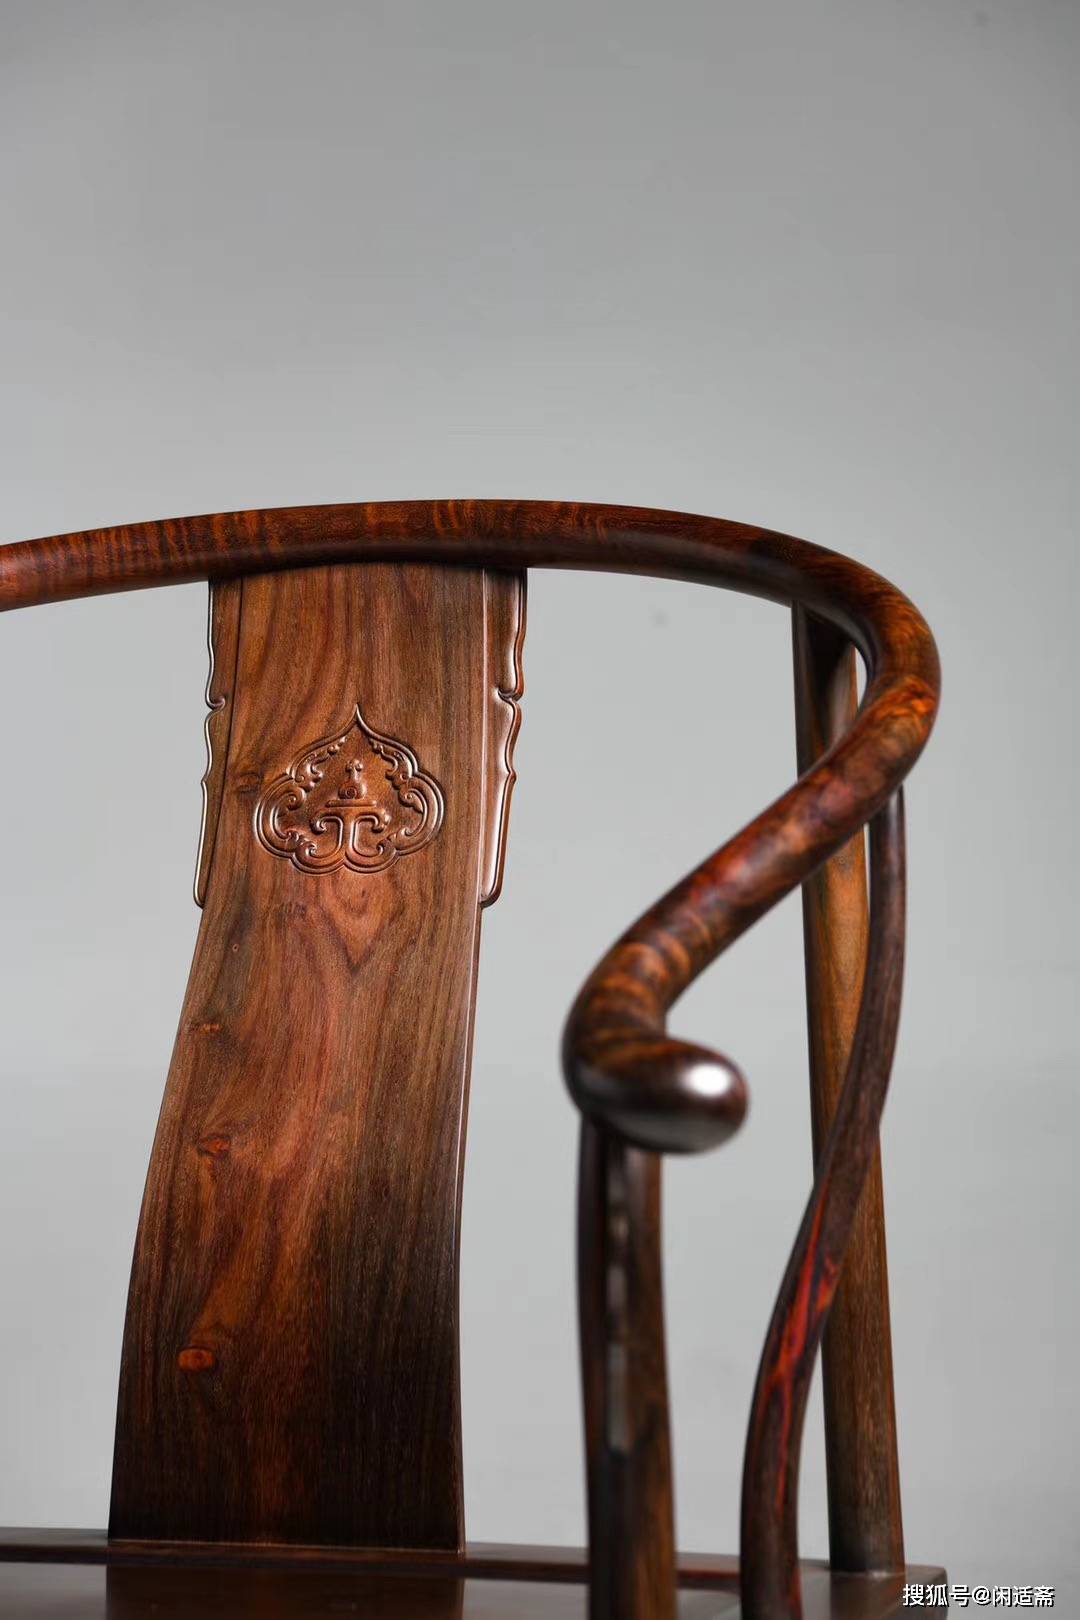 原创明式家具,大红酸枝寿字纹圈椅单张,红木家具经典款